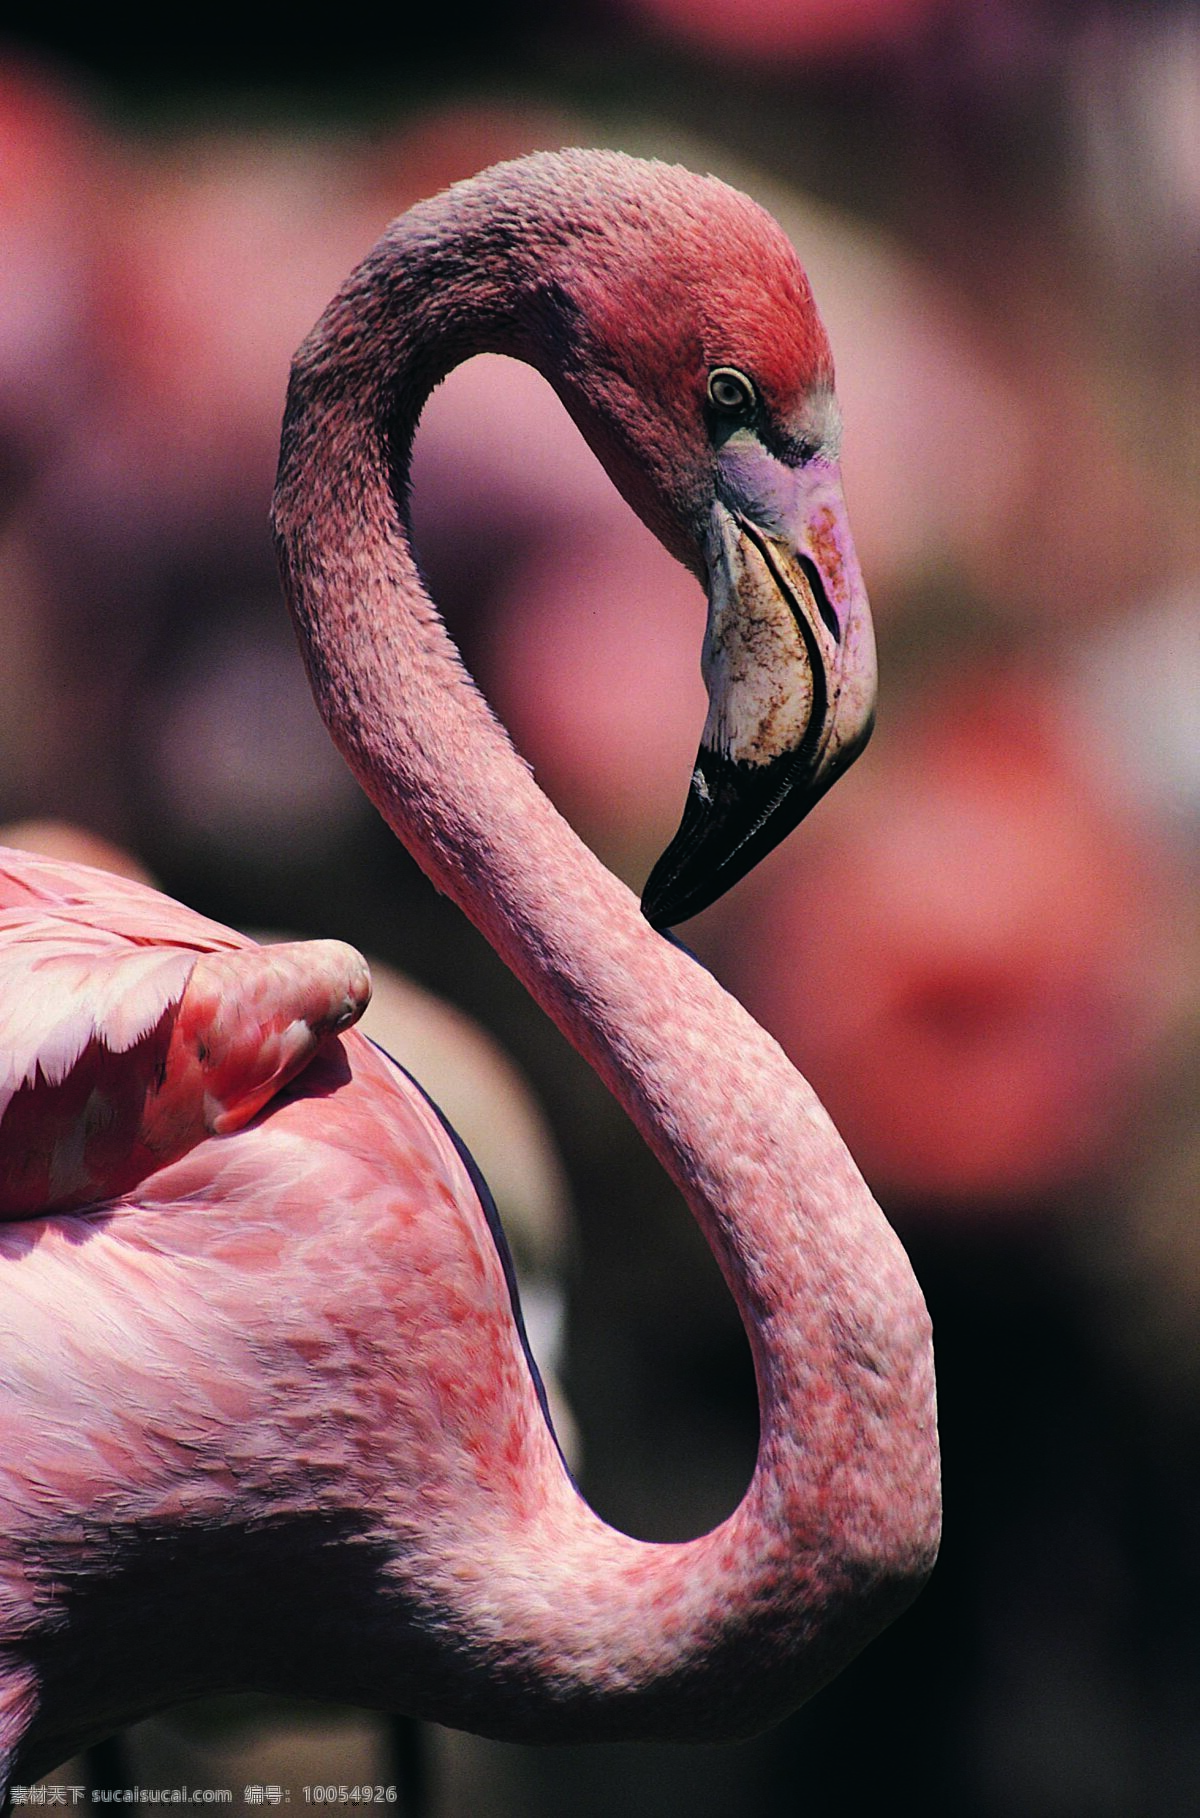 鸟 鸟之百科 鸟类 动物世界 鸟特写近景 鸟类摄影 漂亮鸟类 长脖子鸟类 图素动植物类 生物世界